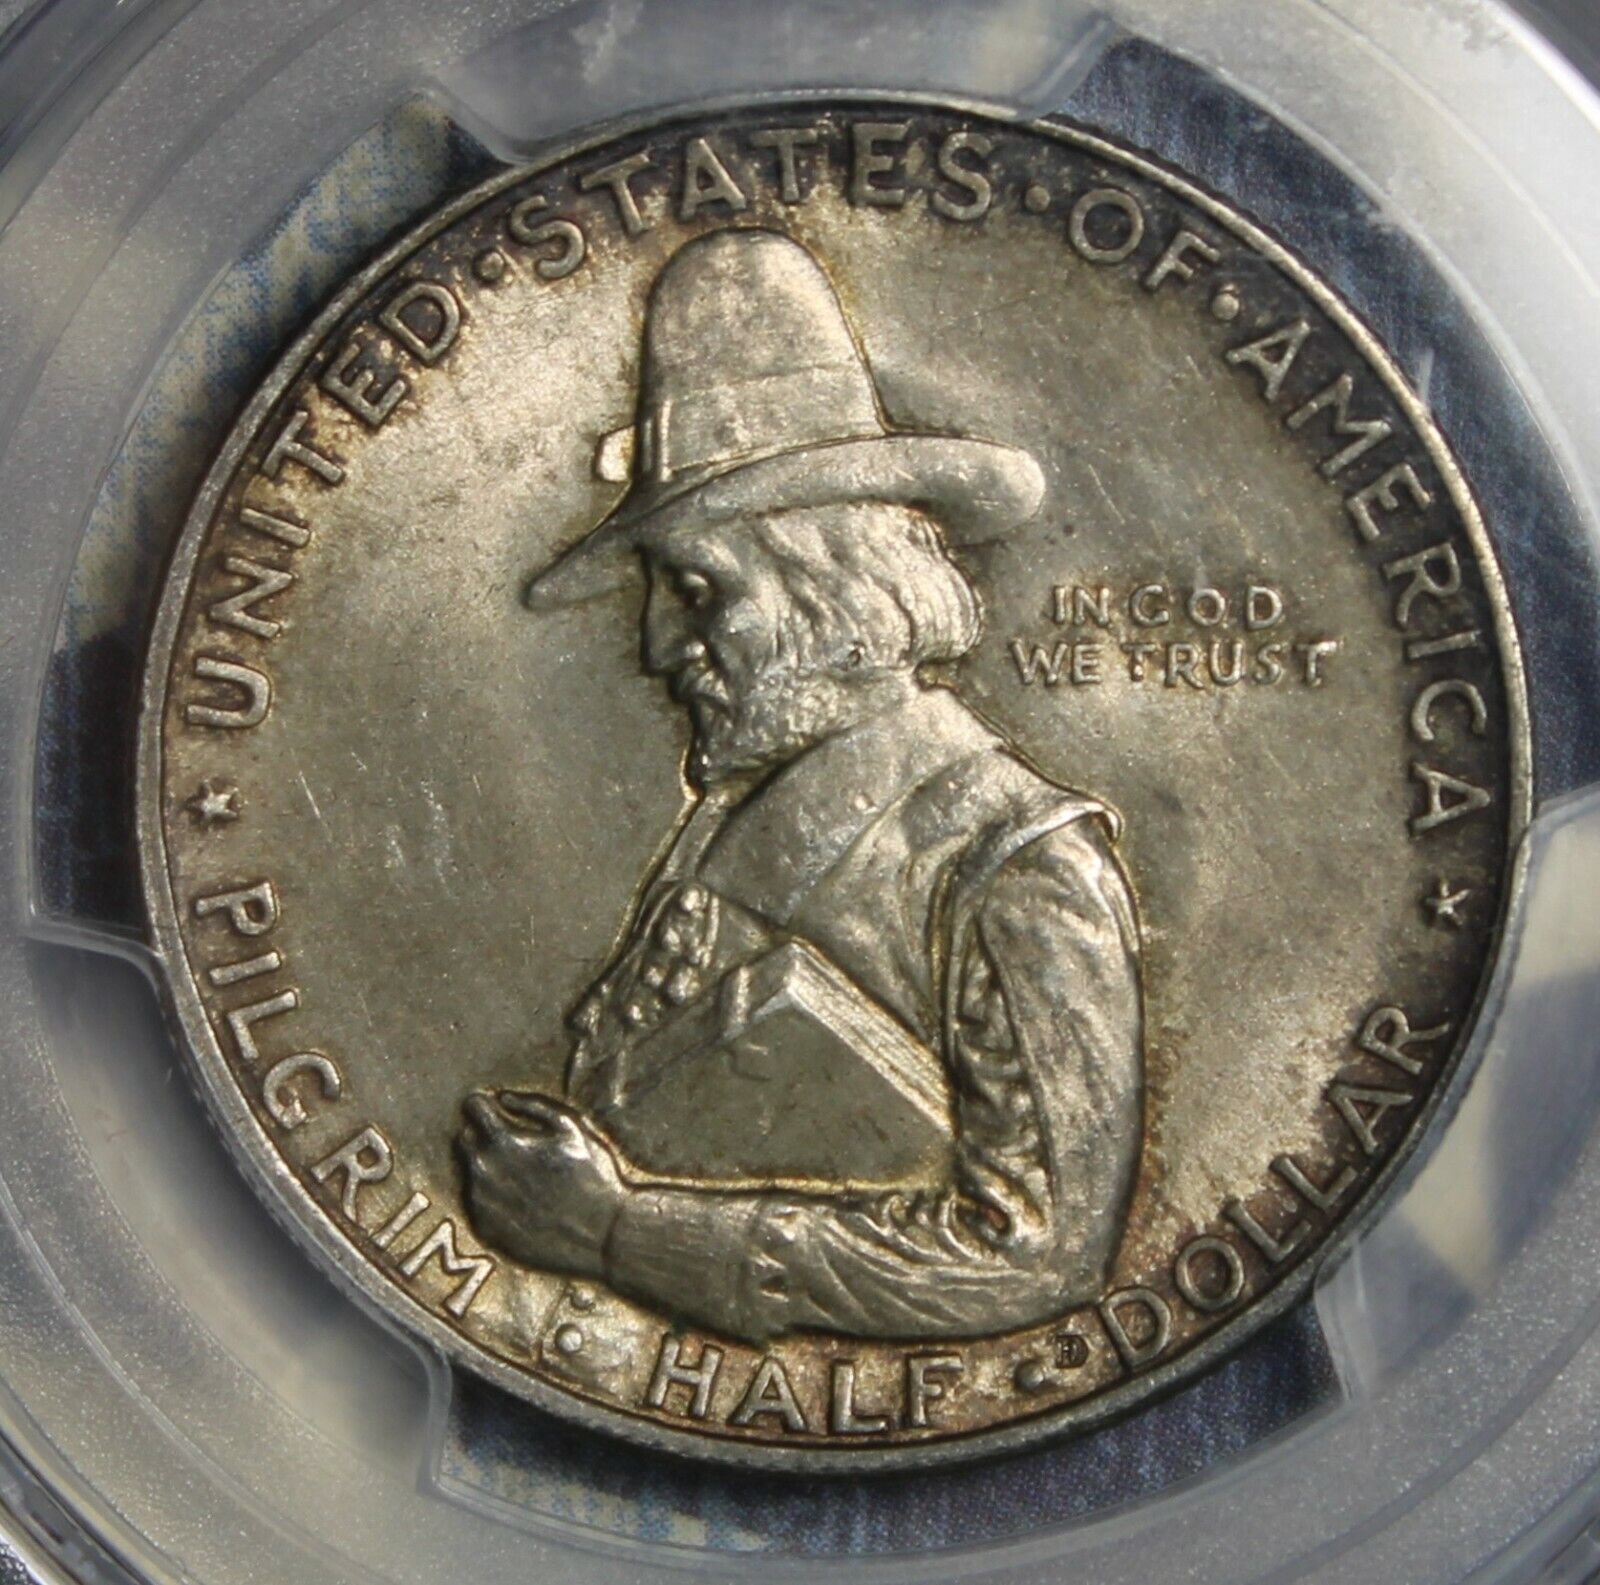 1920 Pilgrim Silver Commemorative Half Dollar Pcgs Ms64 Fs 901 Collector Coin.